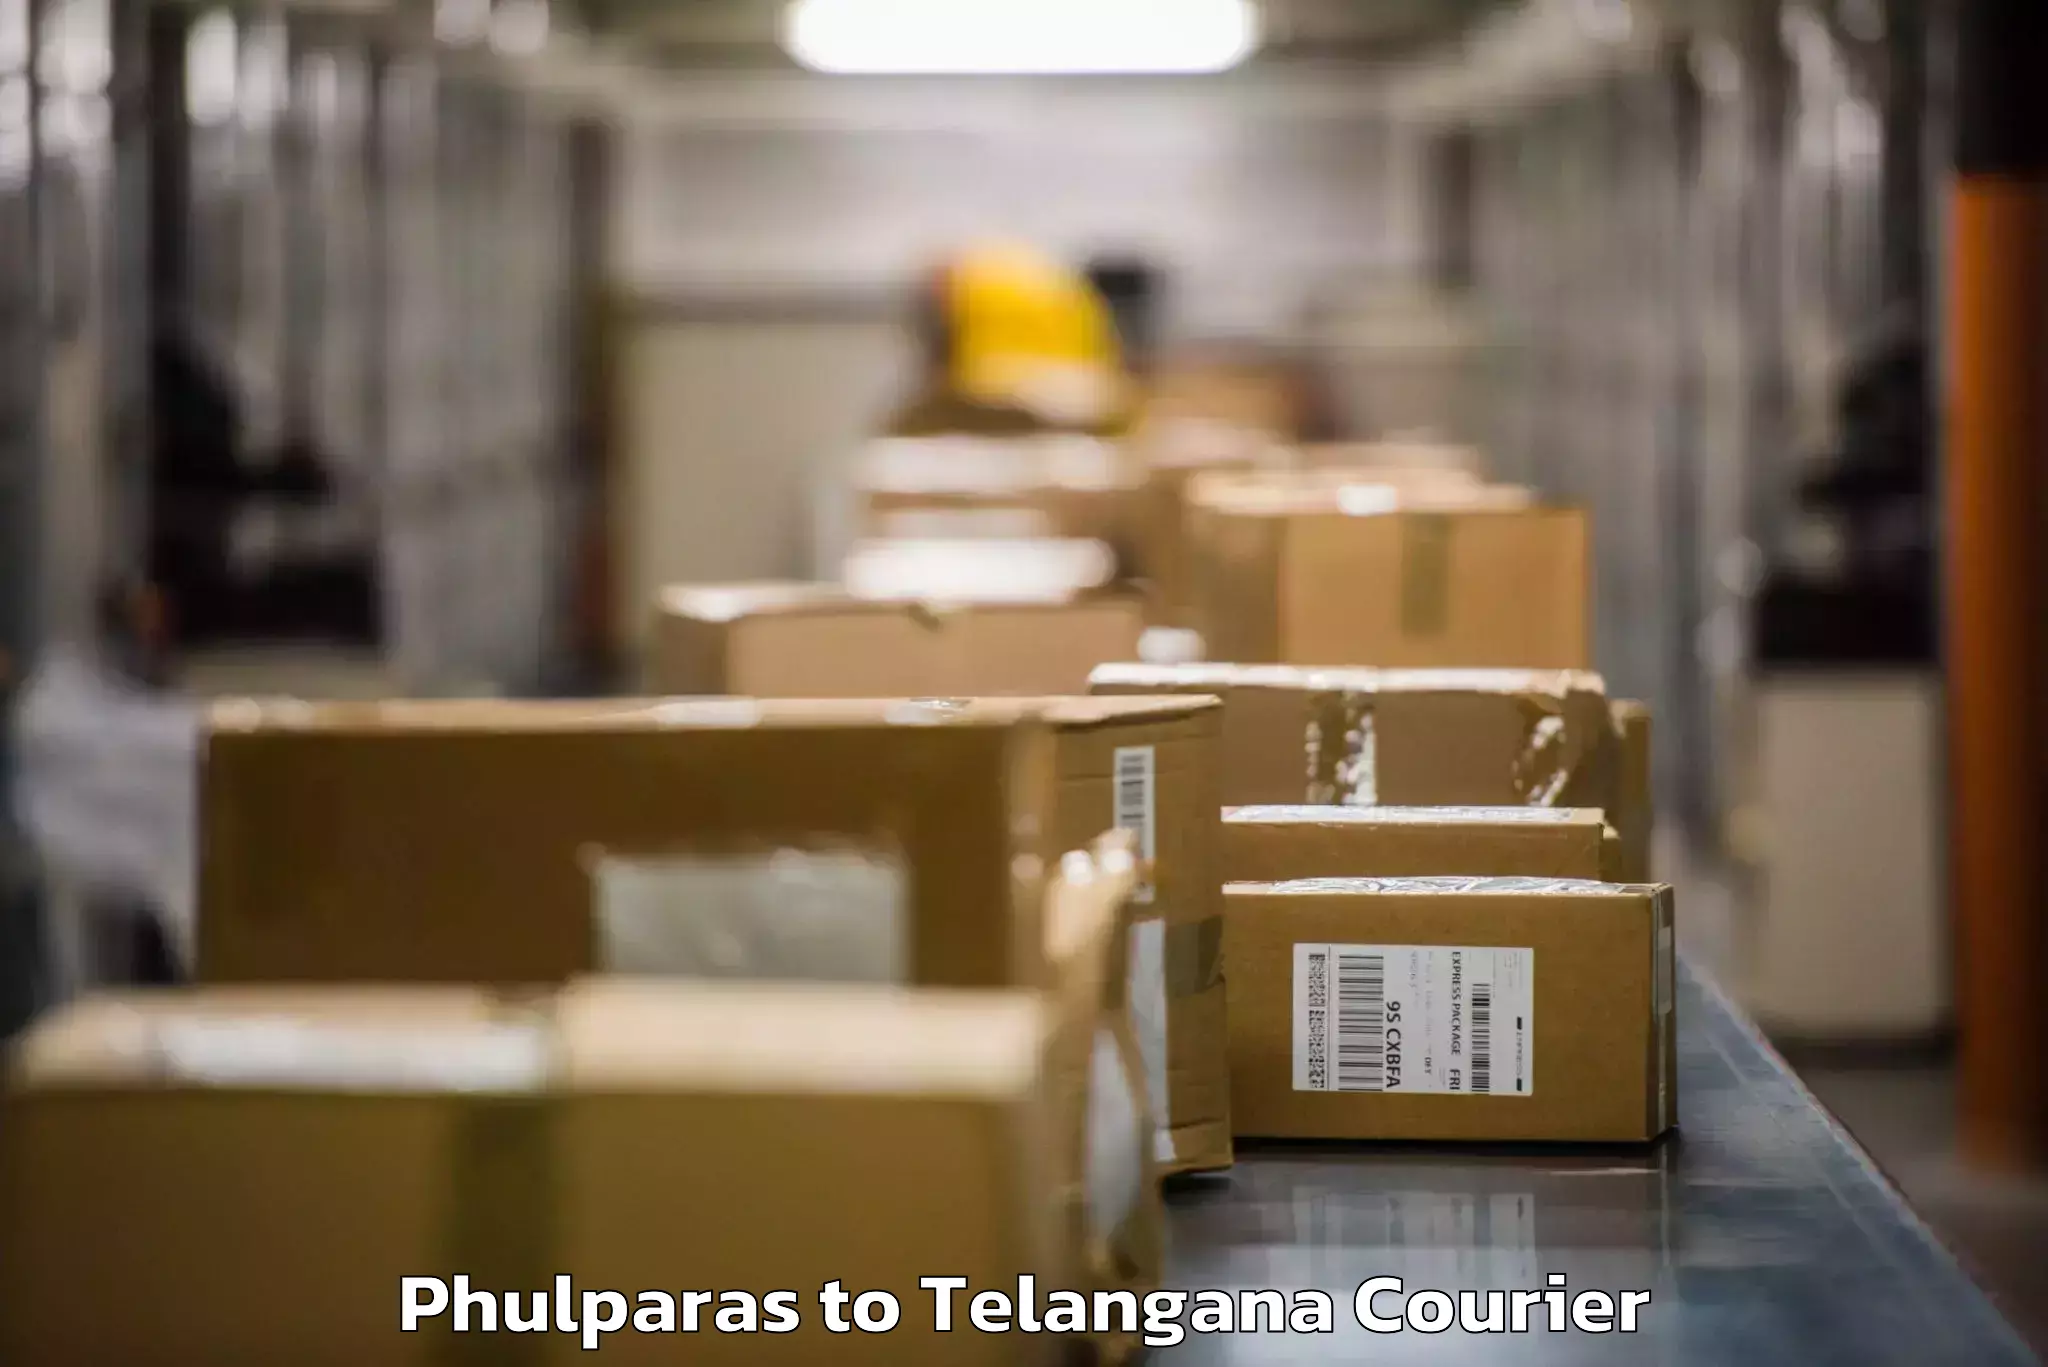 Baggage transport innovation Phulparas to Telangana